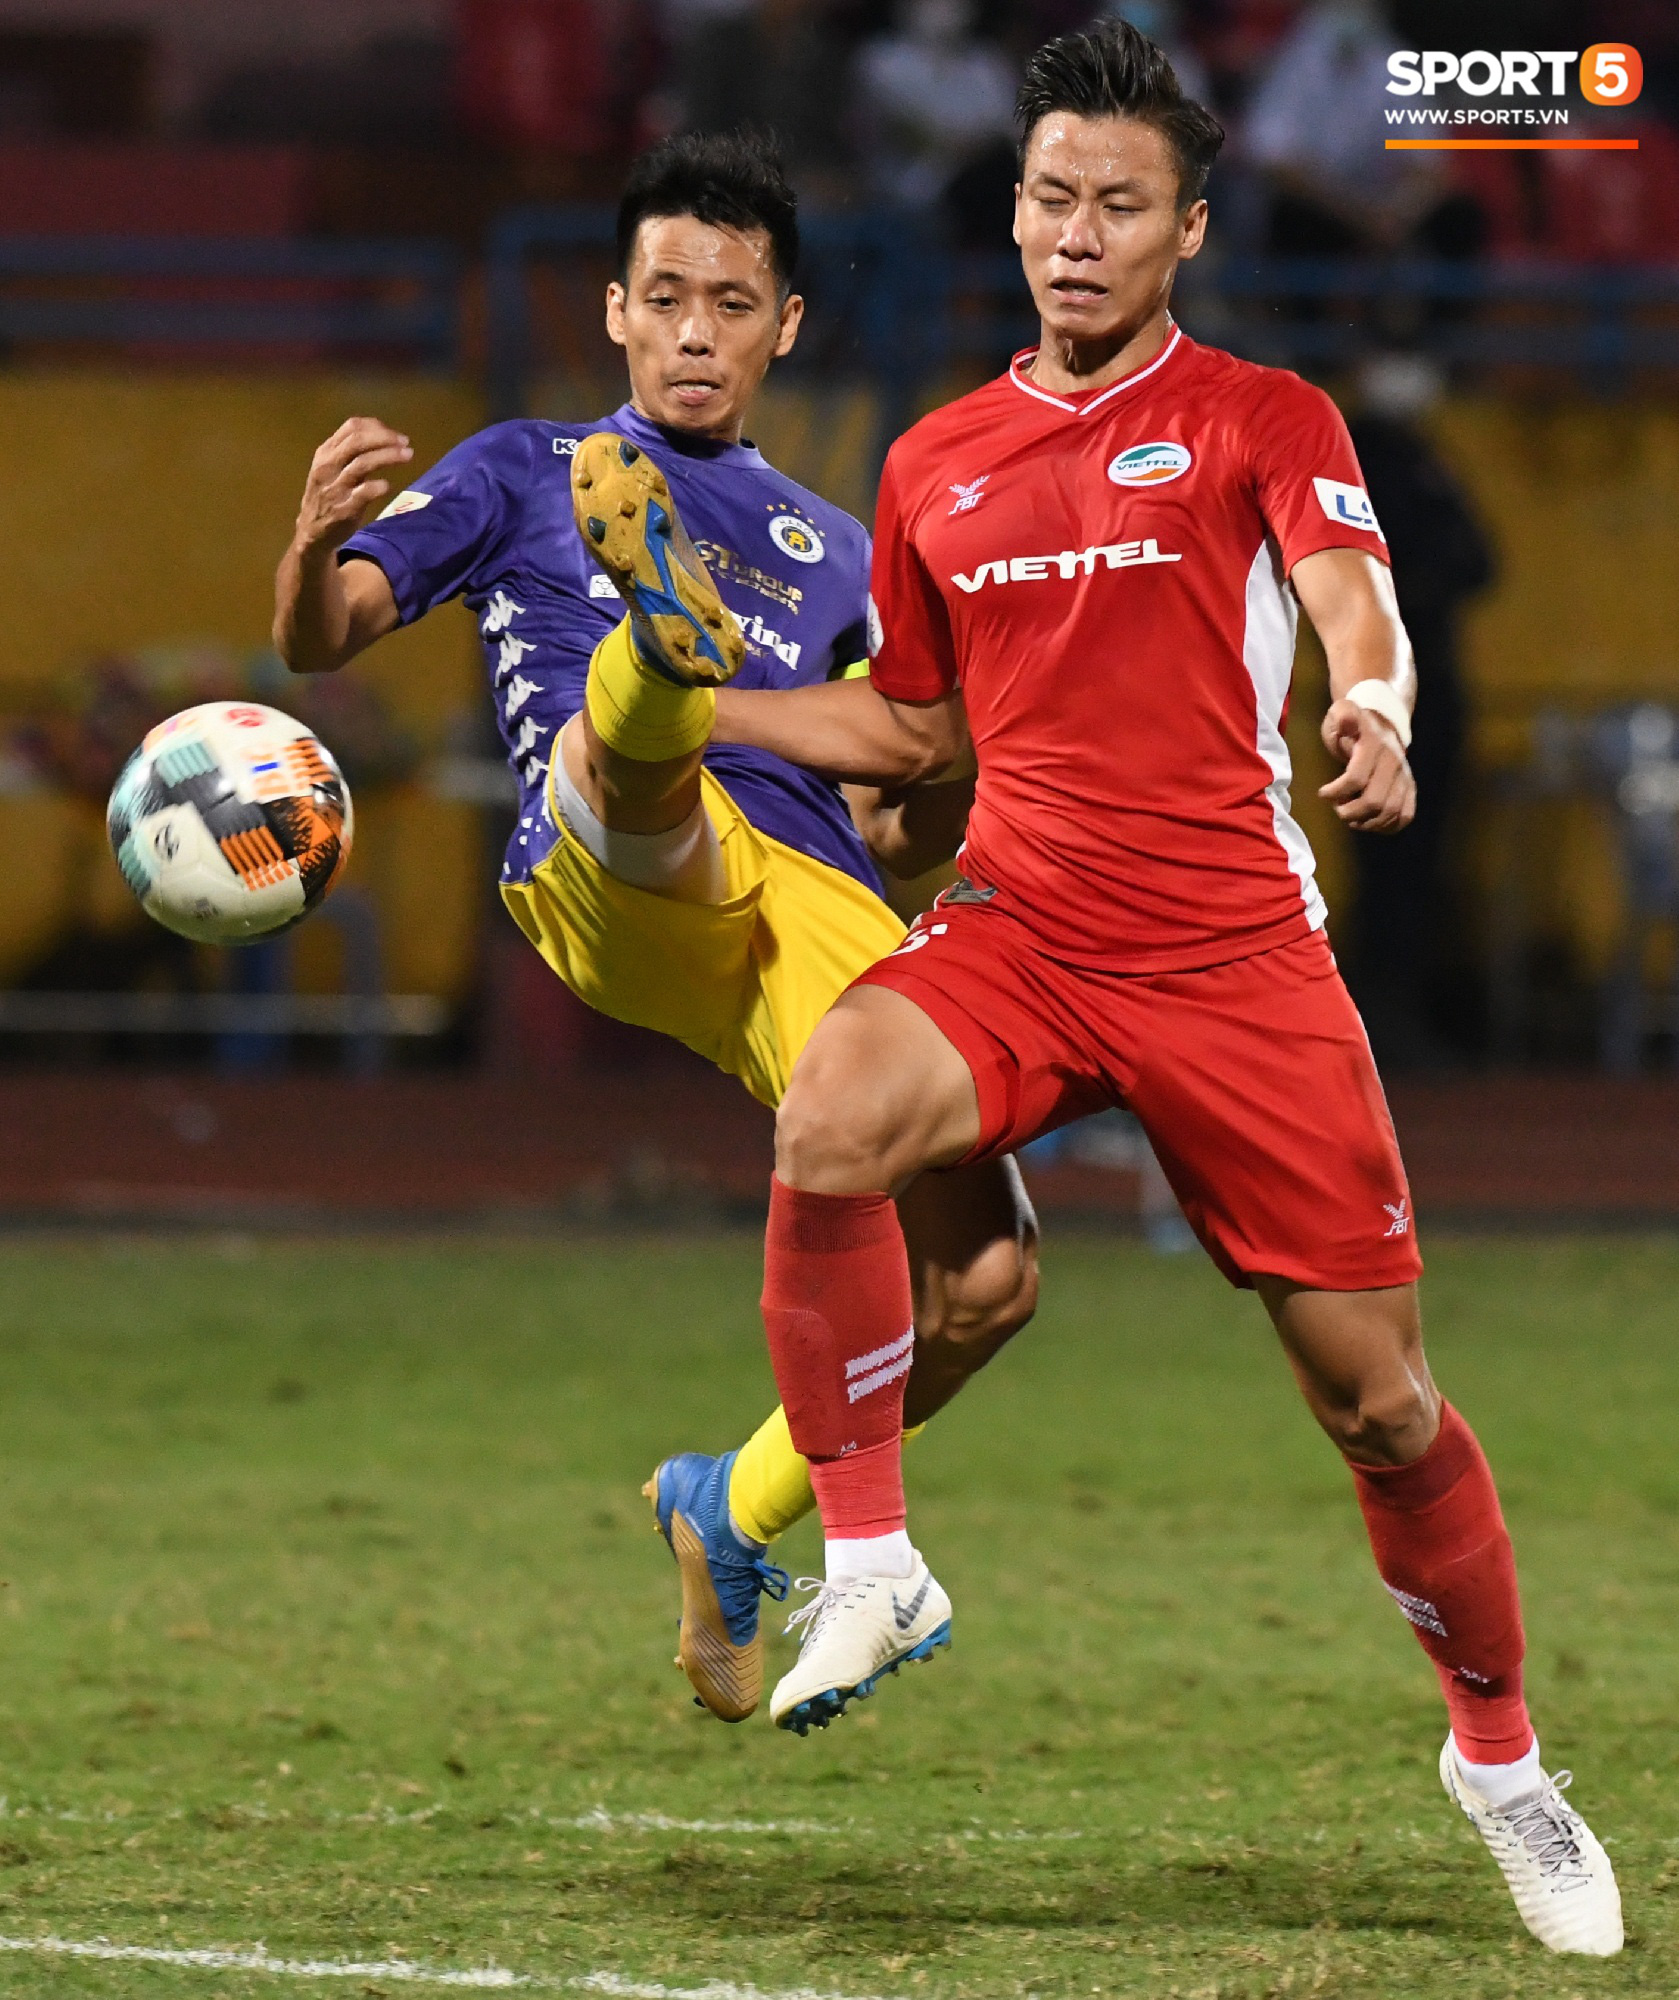 Quang Hải biểu diễn kỹ năng đỡ bóng không cần nhìn cực điệu nghệ, đi bóng khiến hàng thủ Viettel FC hỗn loạn - Ảnh 7.